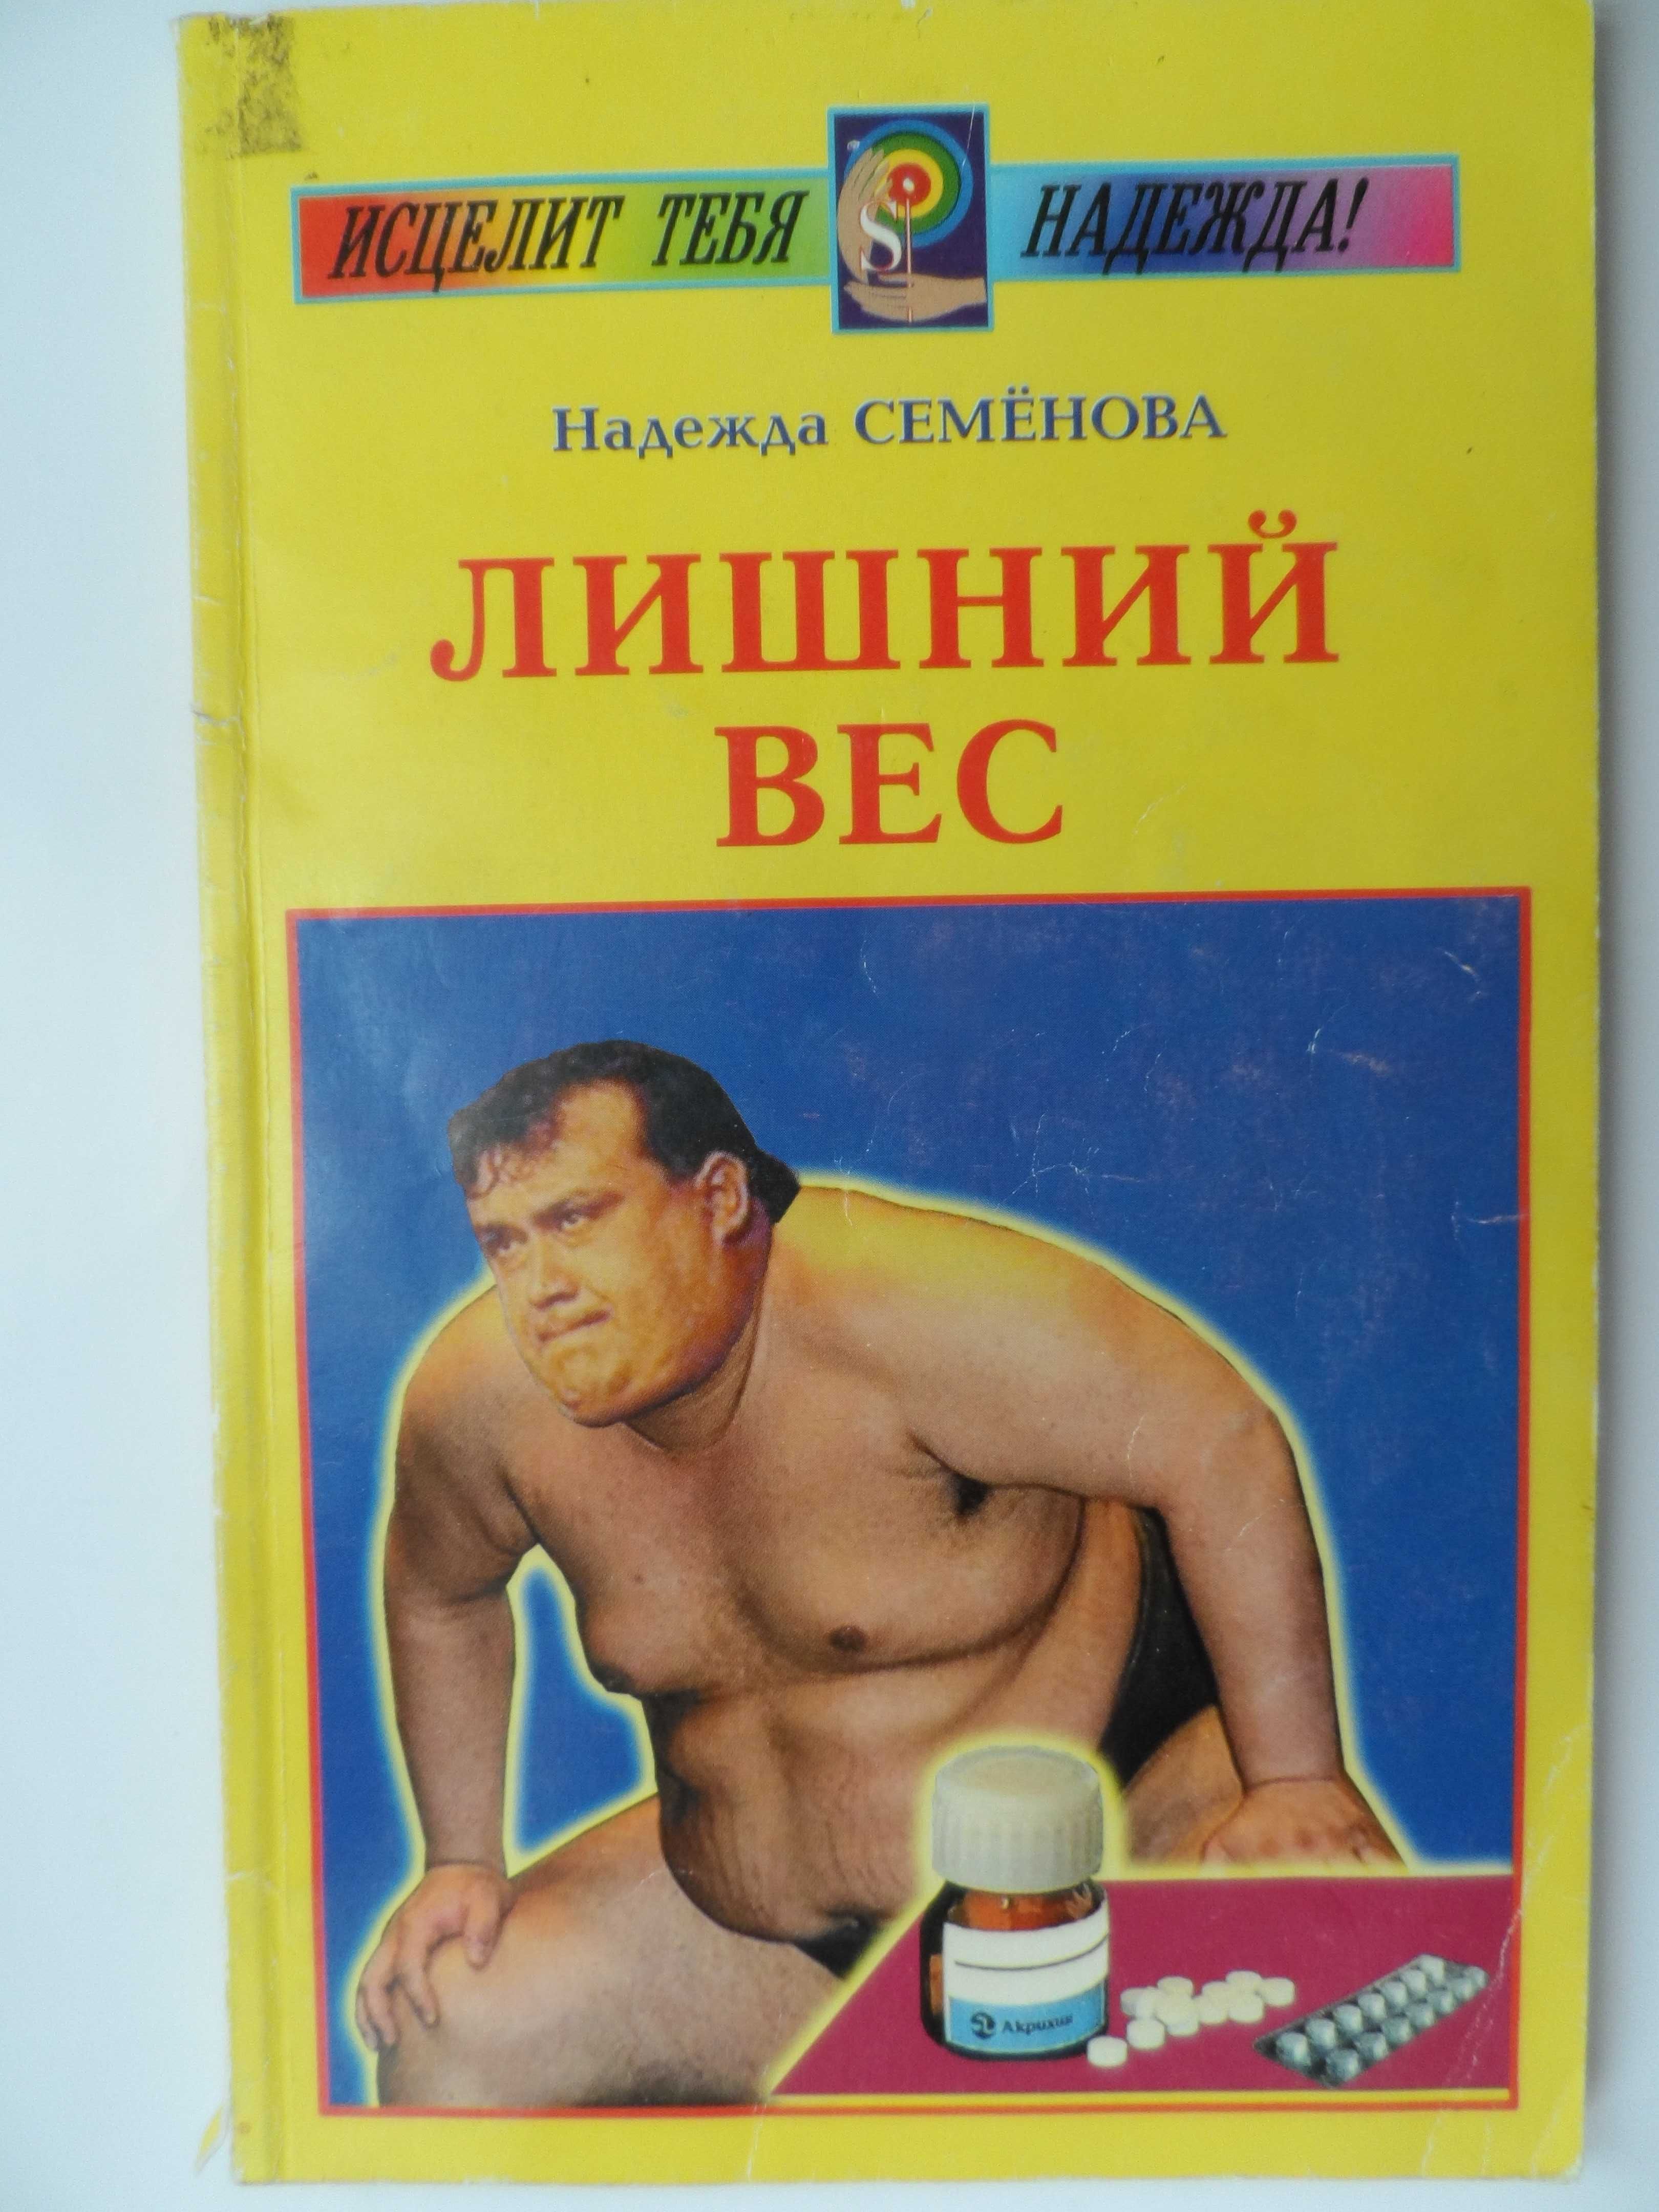 Книга Надежды Семеновой "Лишний вес".